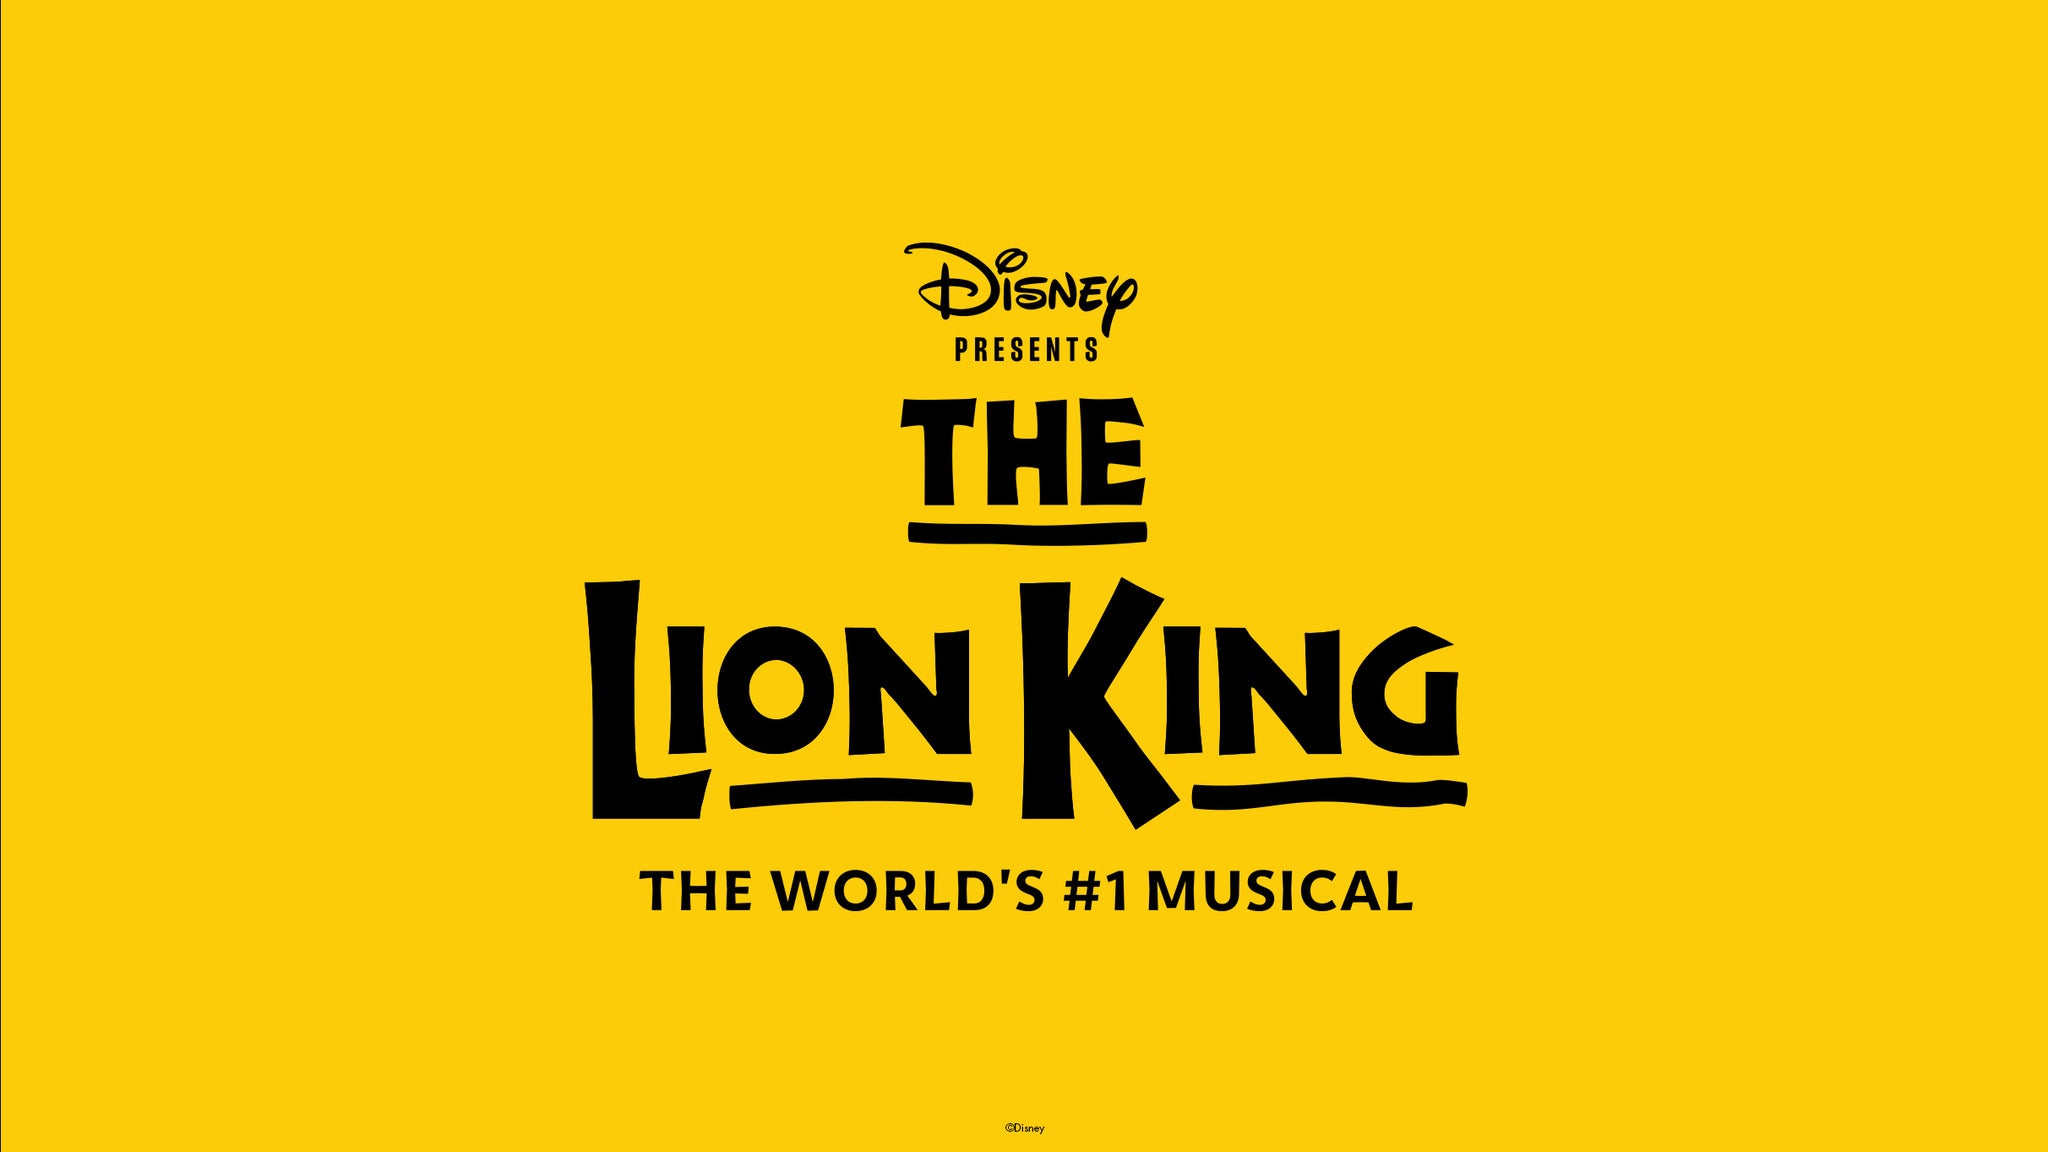 Disney's THE LION KING presale c0de